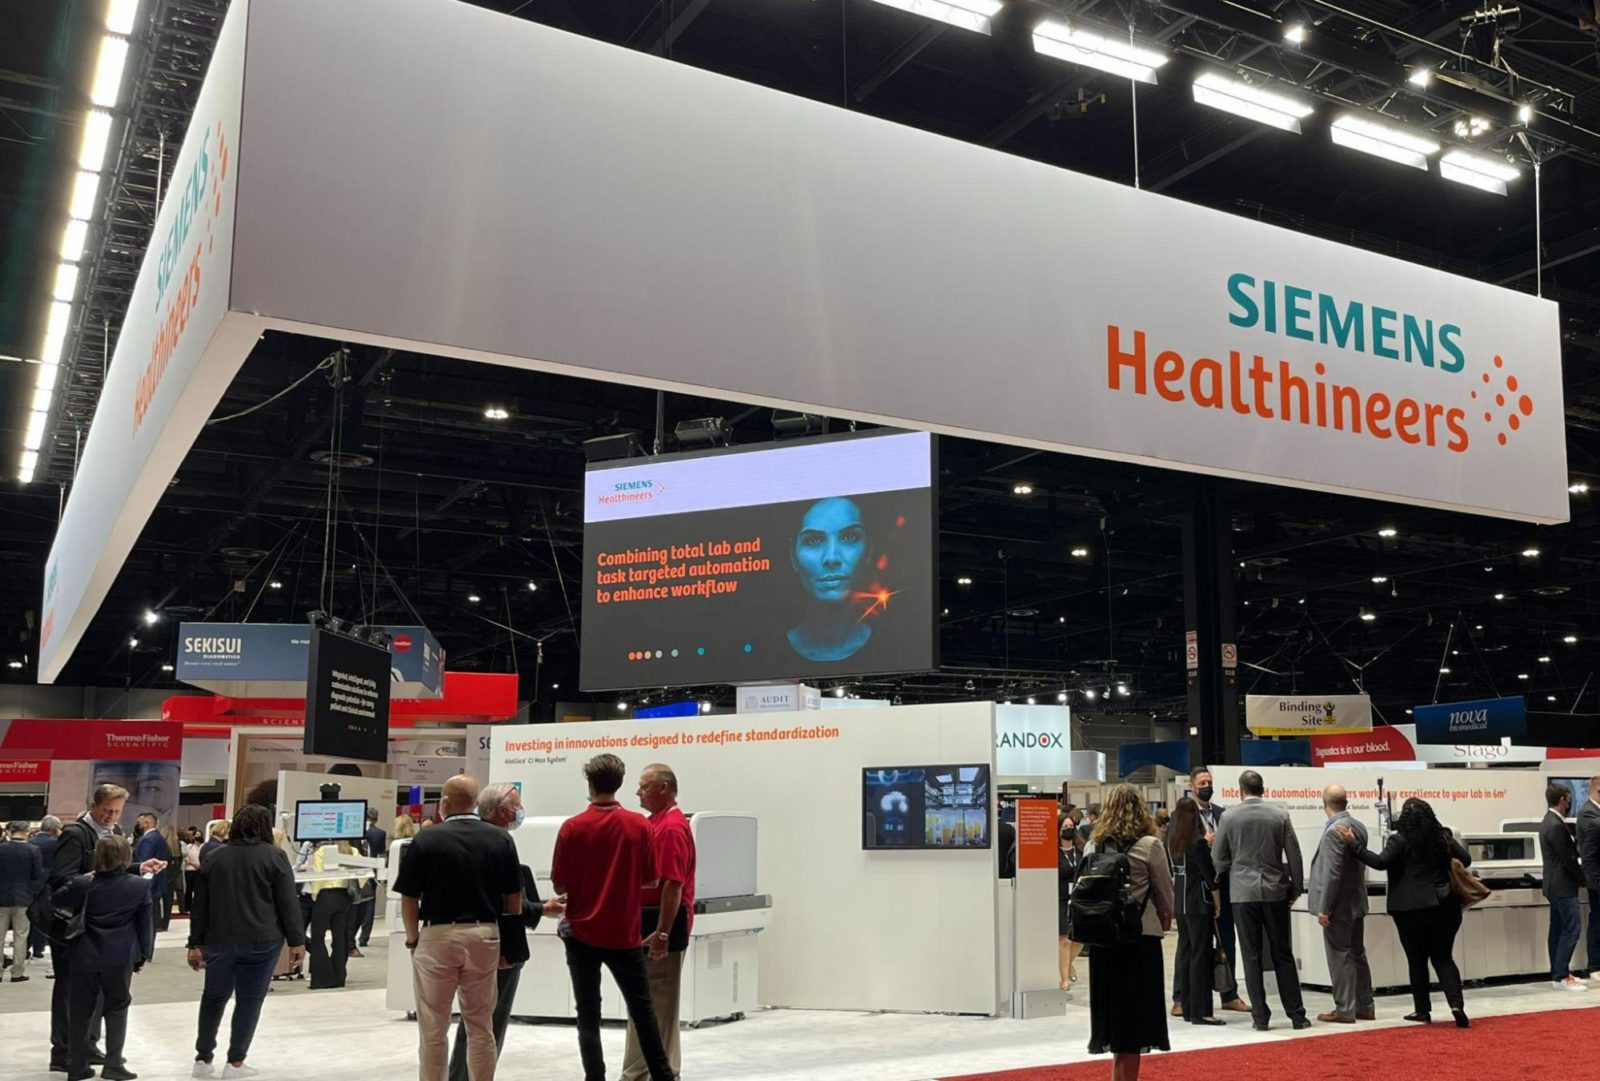 Siemens Healthineer's exhibit